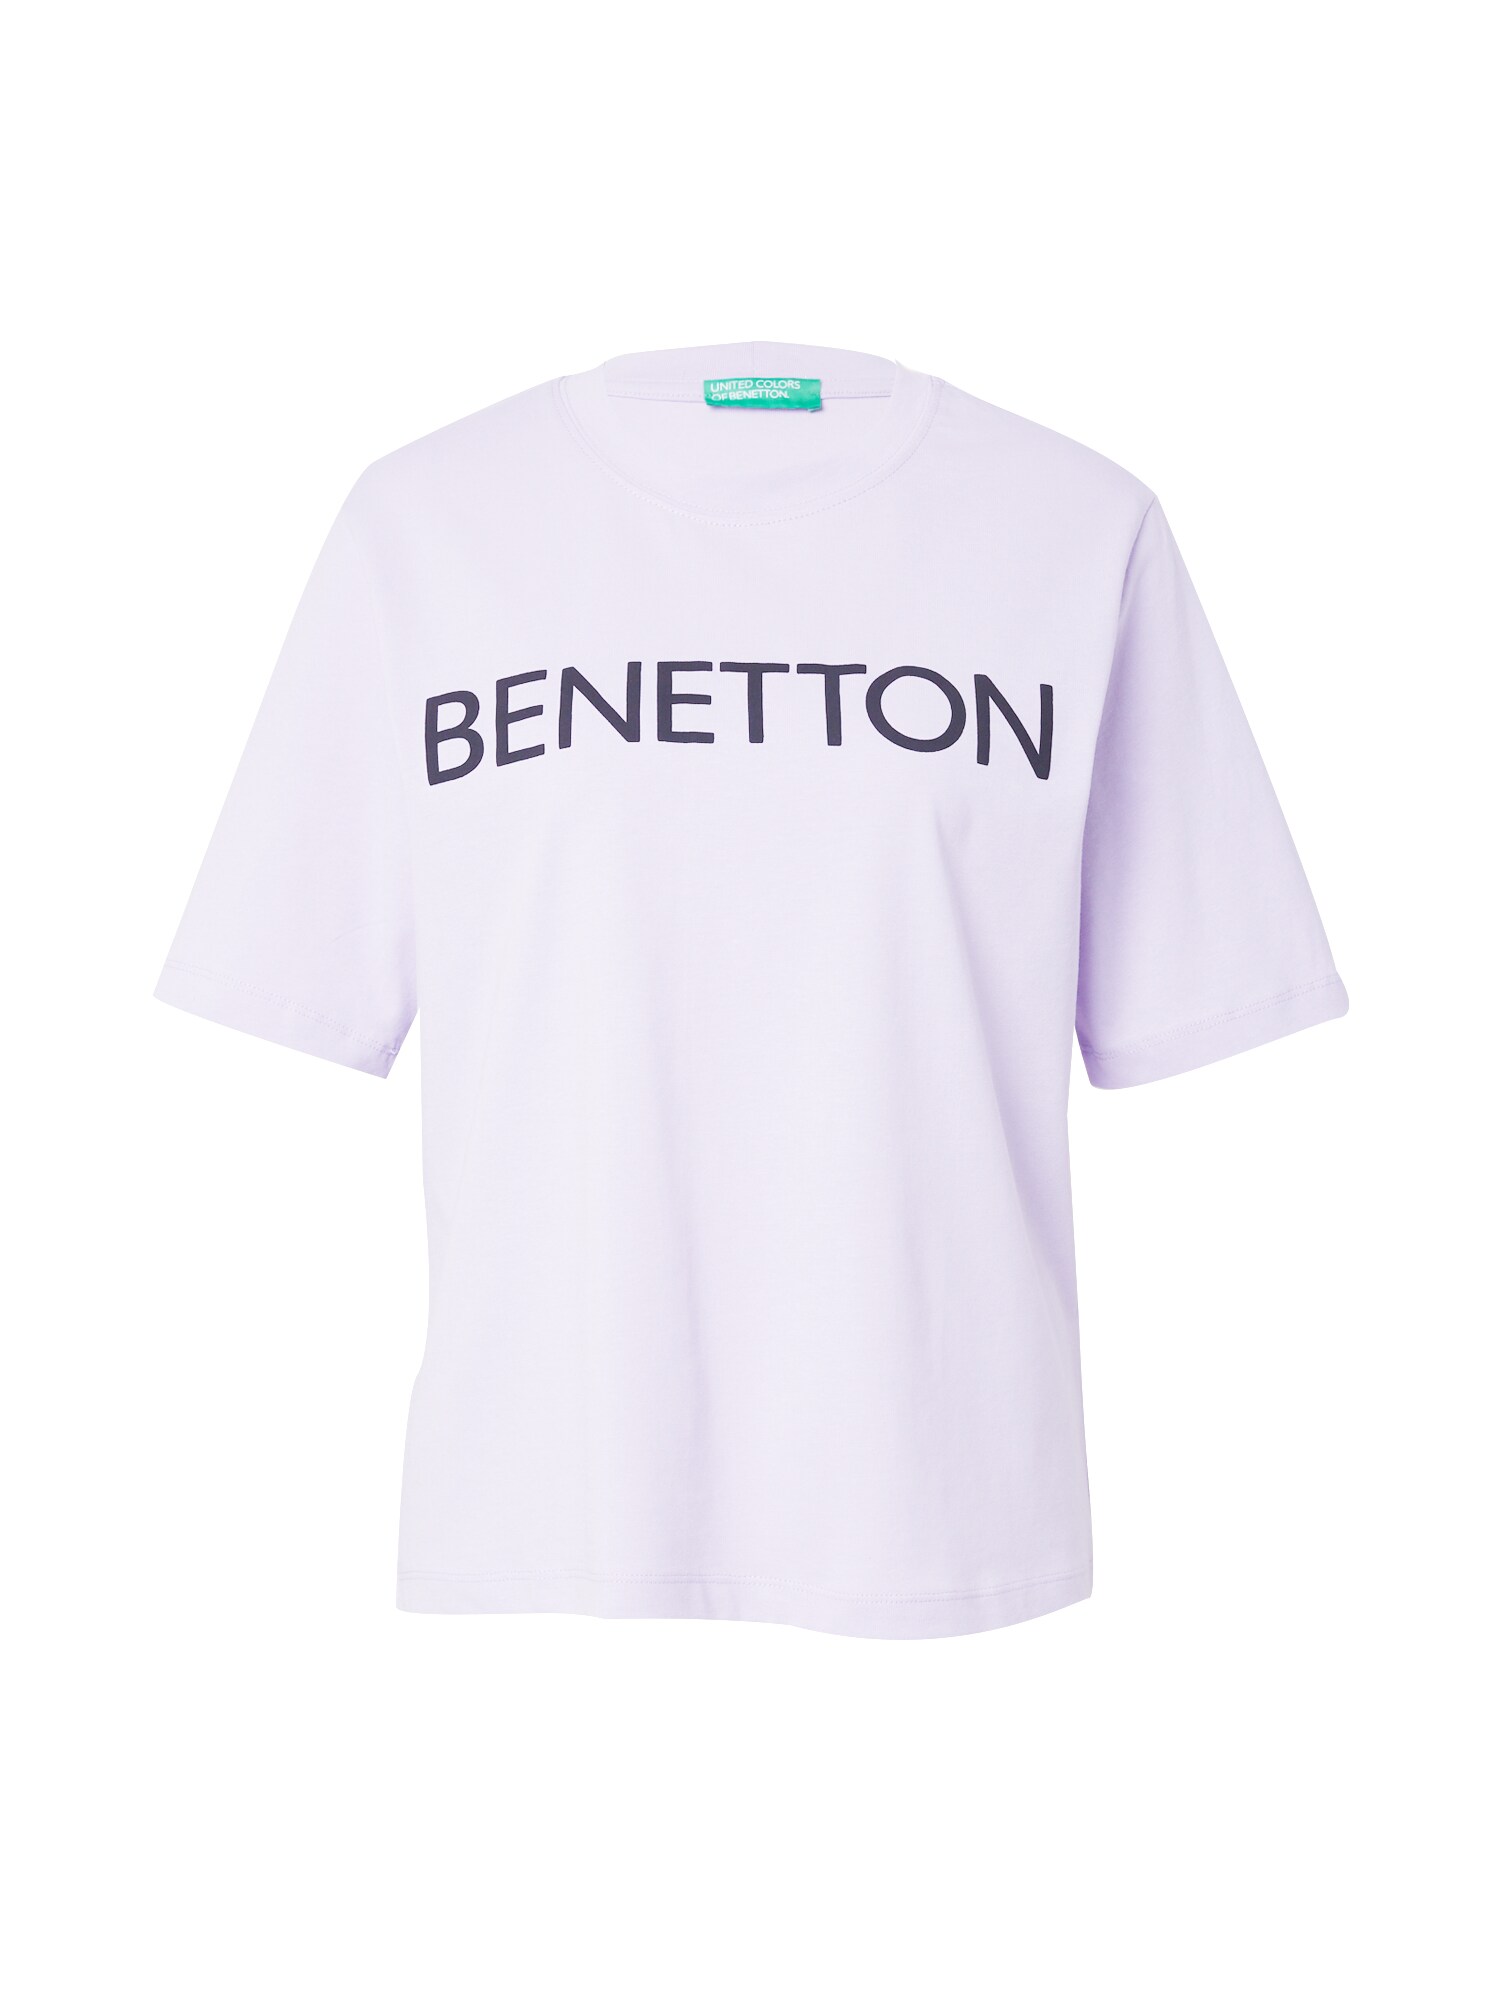 UNITED COLORS OF BENETTON Marškinėliai nakties mėlyna / pastelinė violetinė